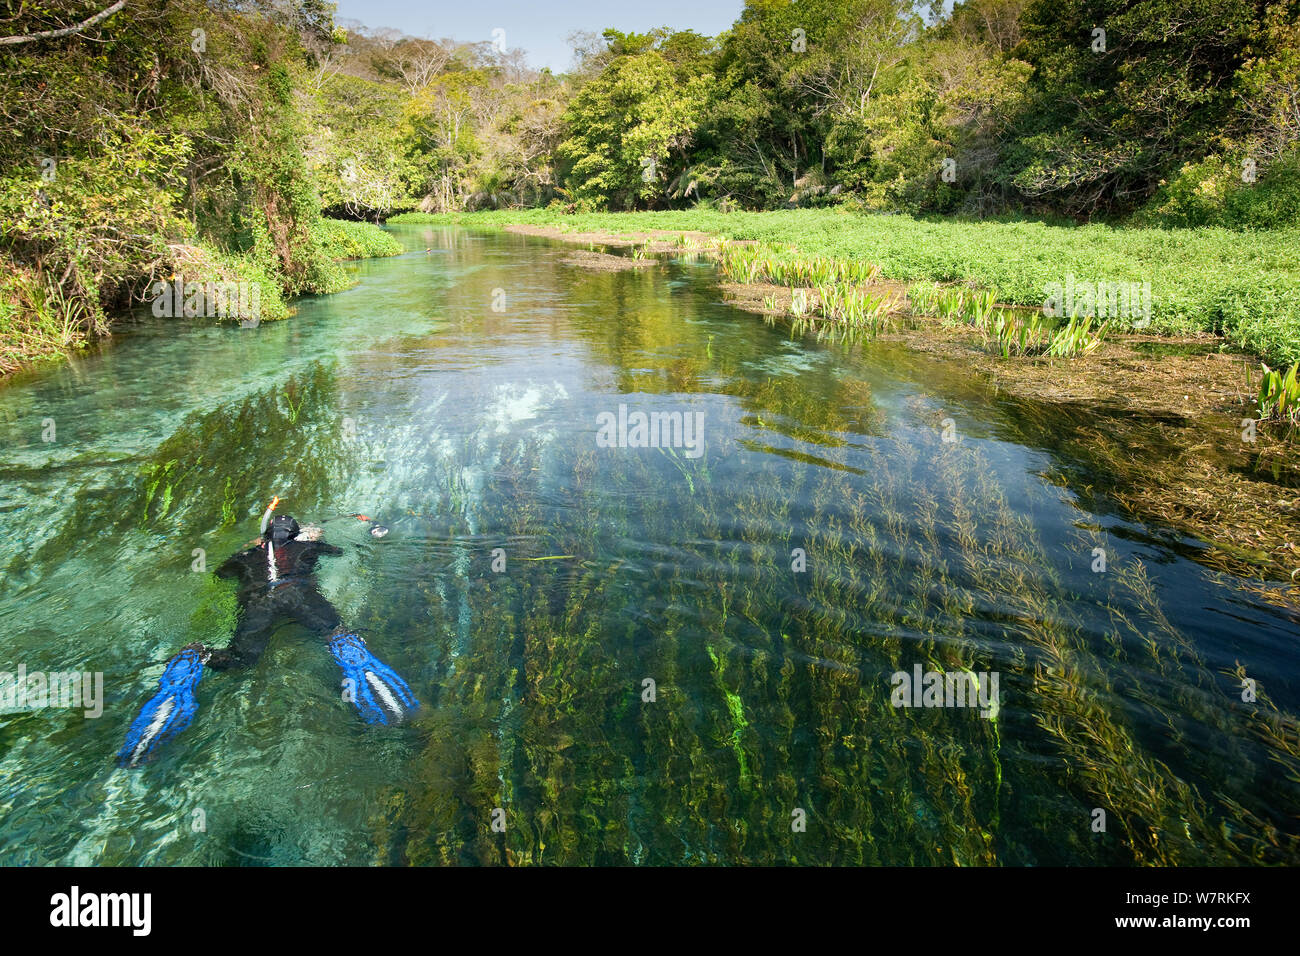 Fotograf Franco Banfi Schnorcheln auf der Suche nach Fisch im Rio Sucuri, Bonito, Mato Grosso do Sul, Brasilien Stockfoto